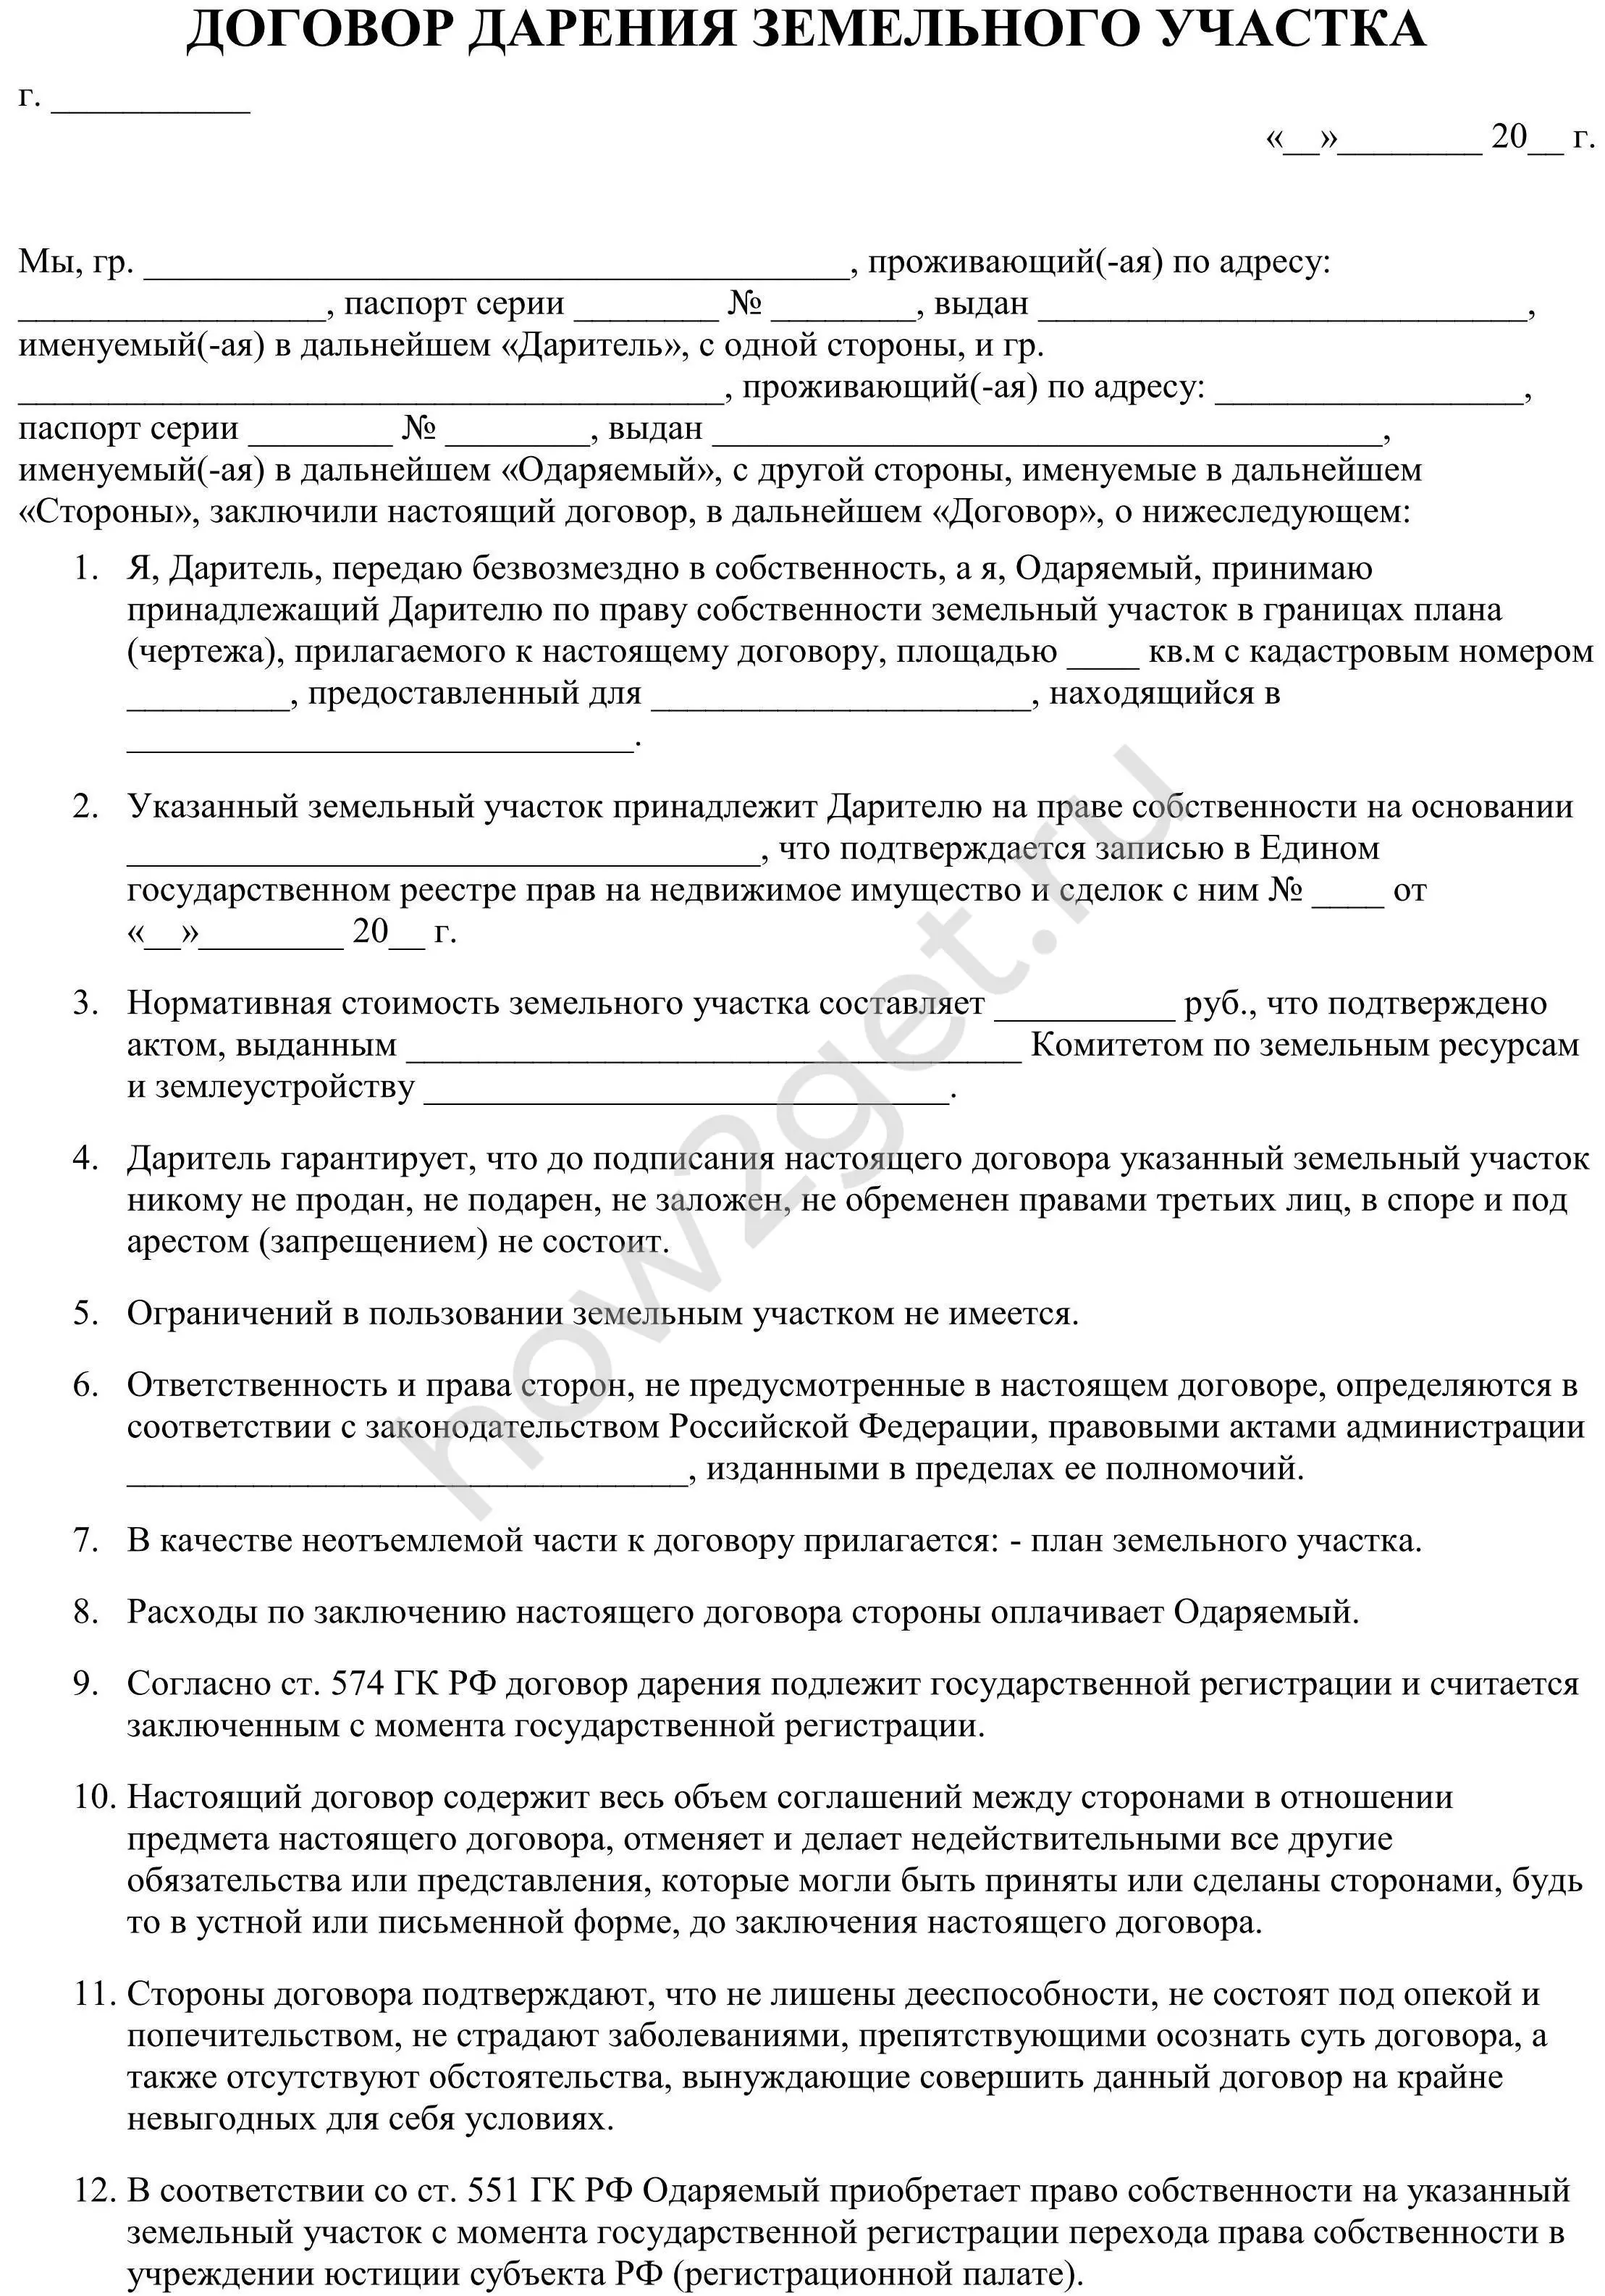 Какие лица могут быть приняты в российское гражданство упрощенном порядке